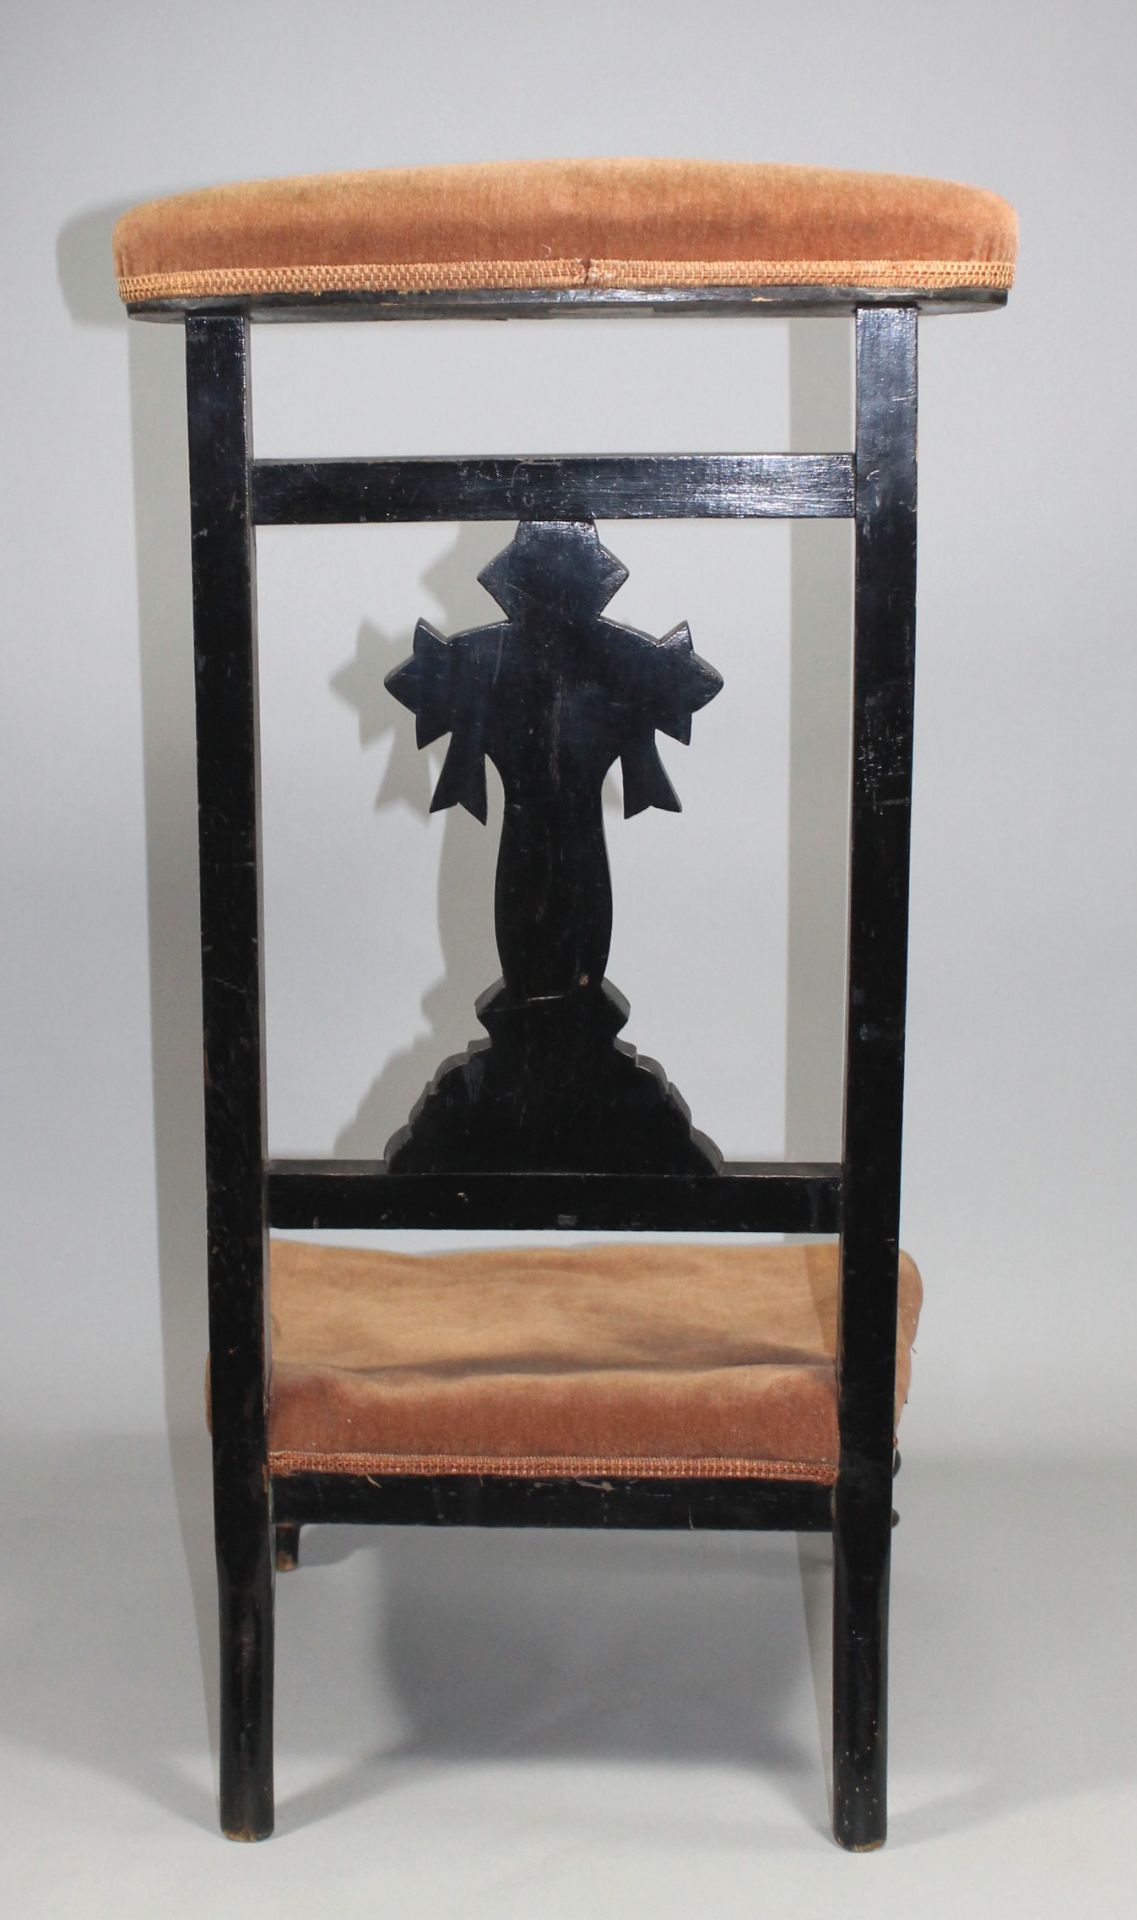 1 alter Gebetsstuhl mit Hocker, Eiche, Samtbezug, altersbedingte Gerauchsspuren, ca. 91cm x 46,5cm x - Image 2 of 2